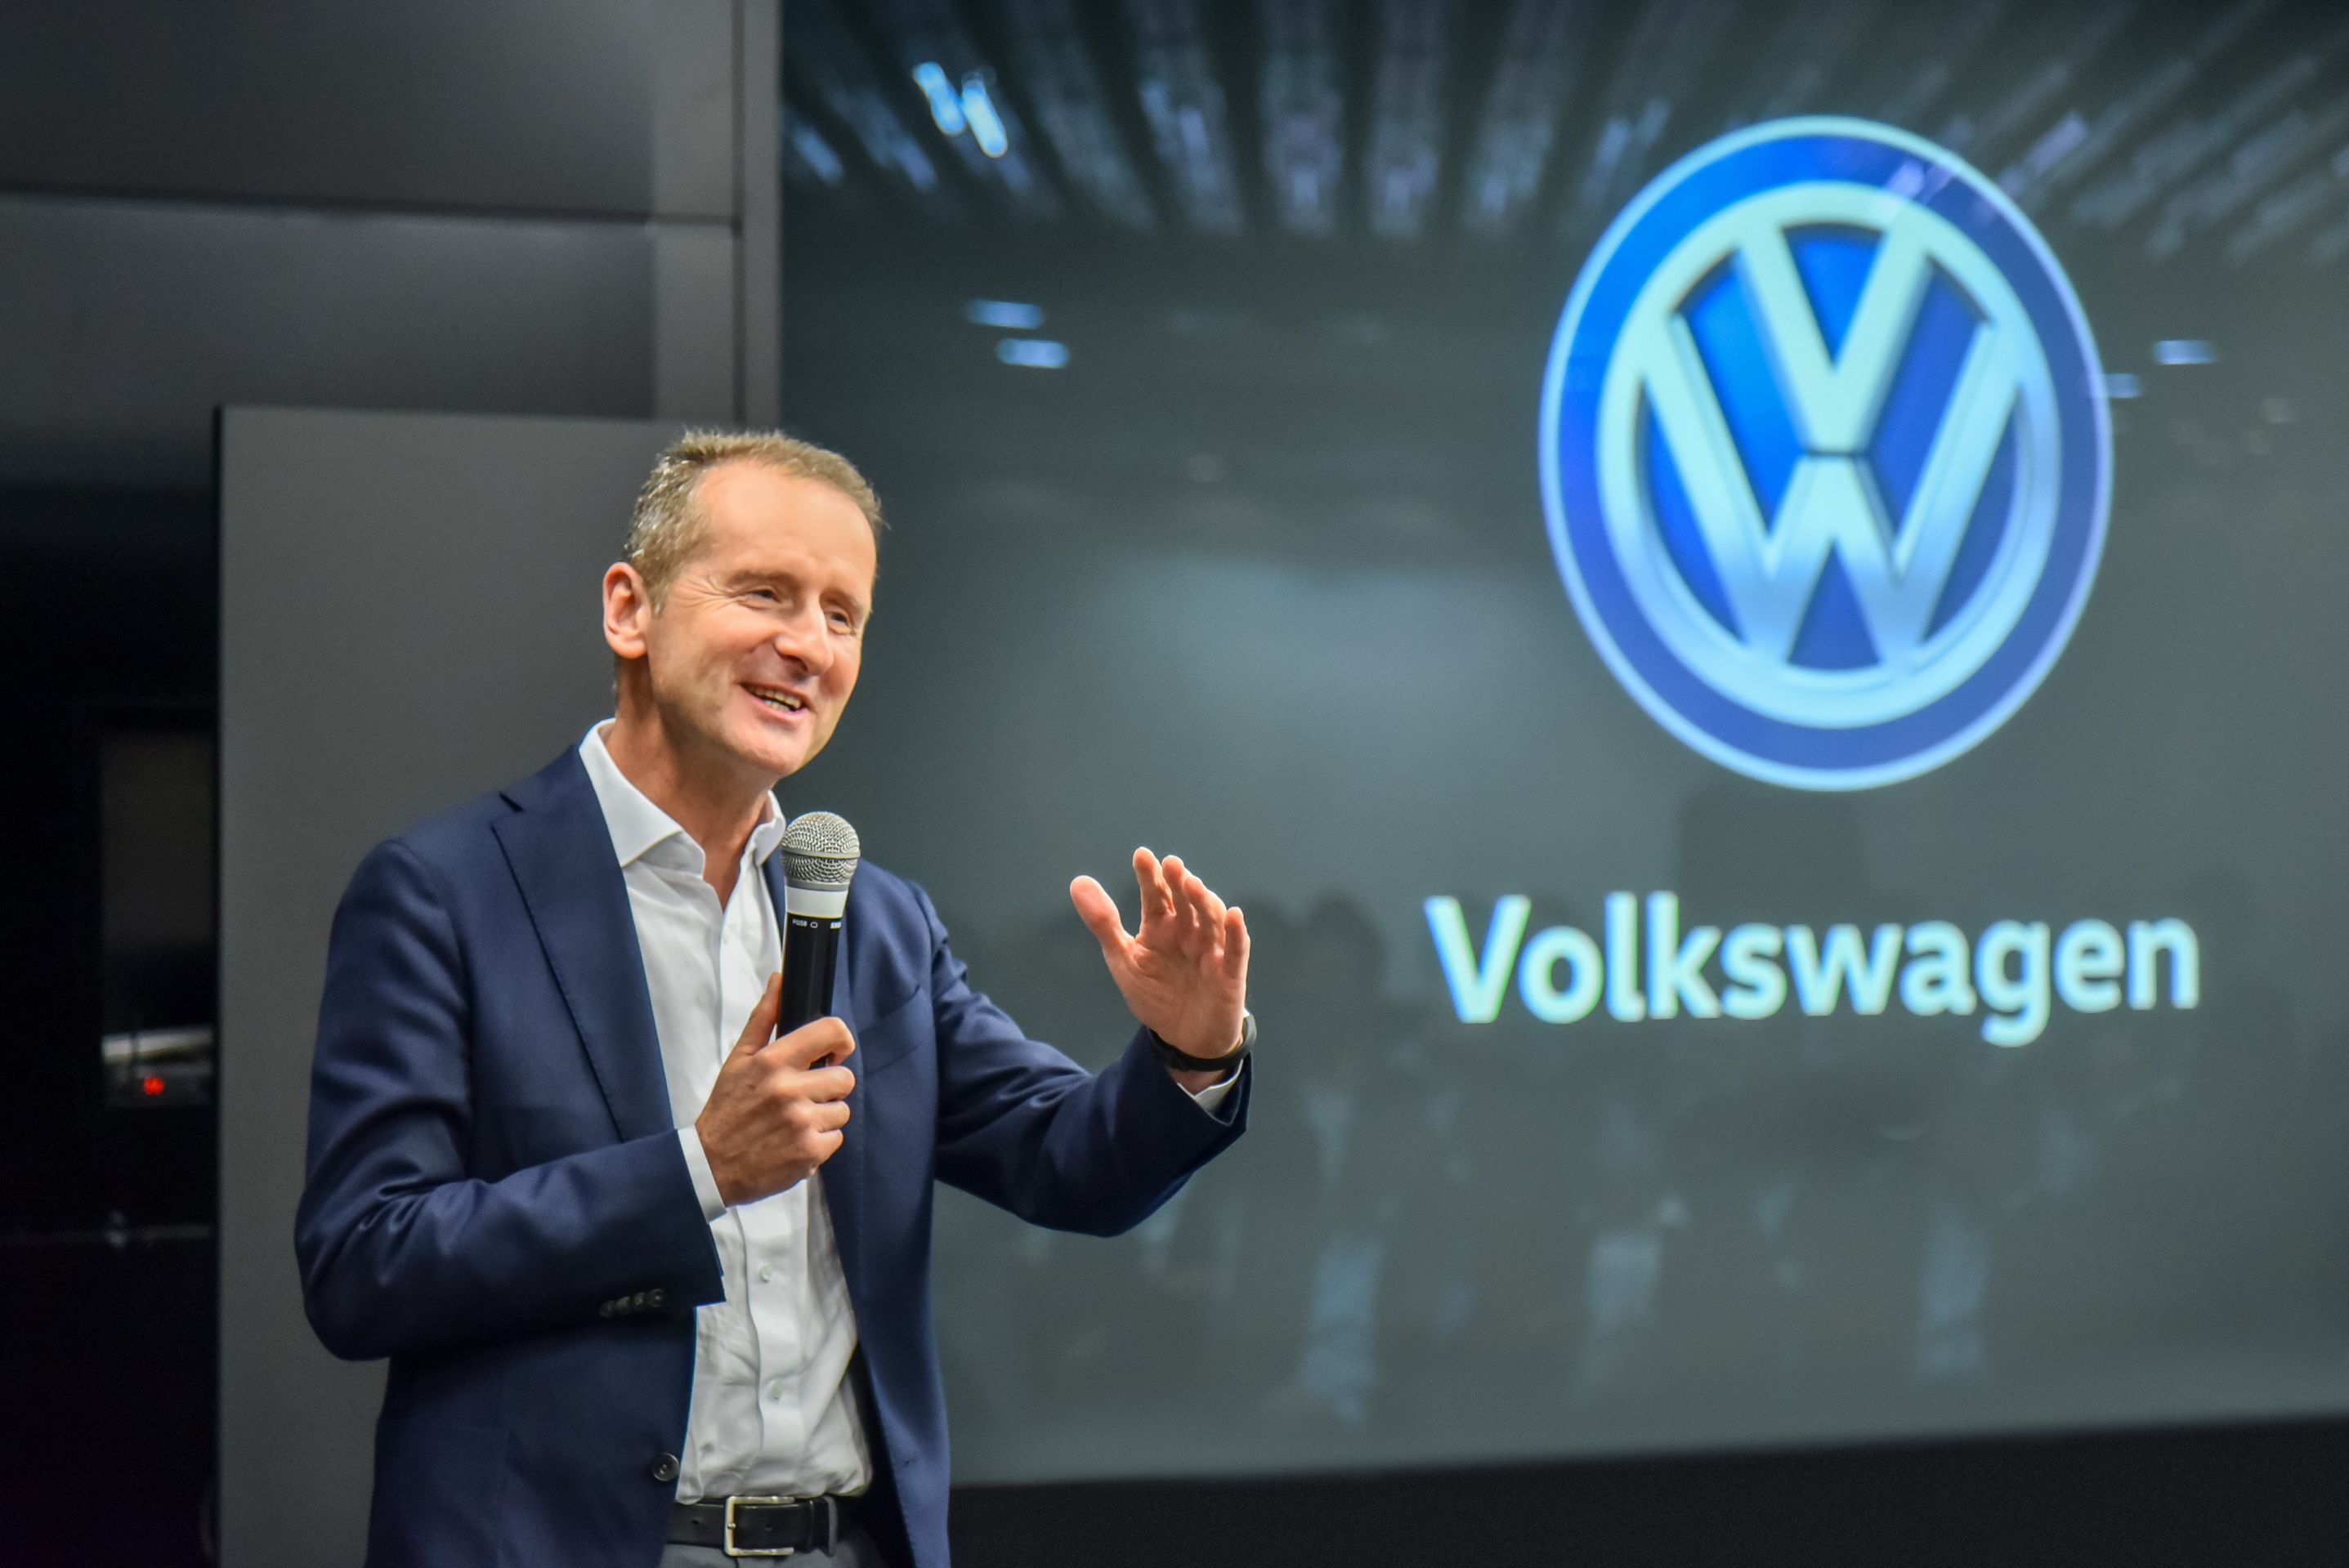 Dos 20 lançamentos da VW, 13 terão produção local até 2020